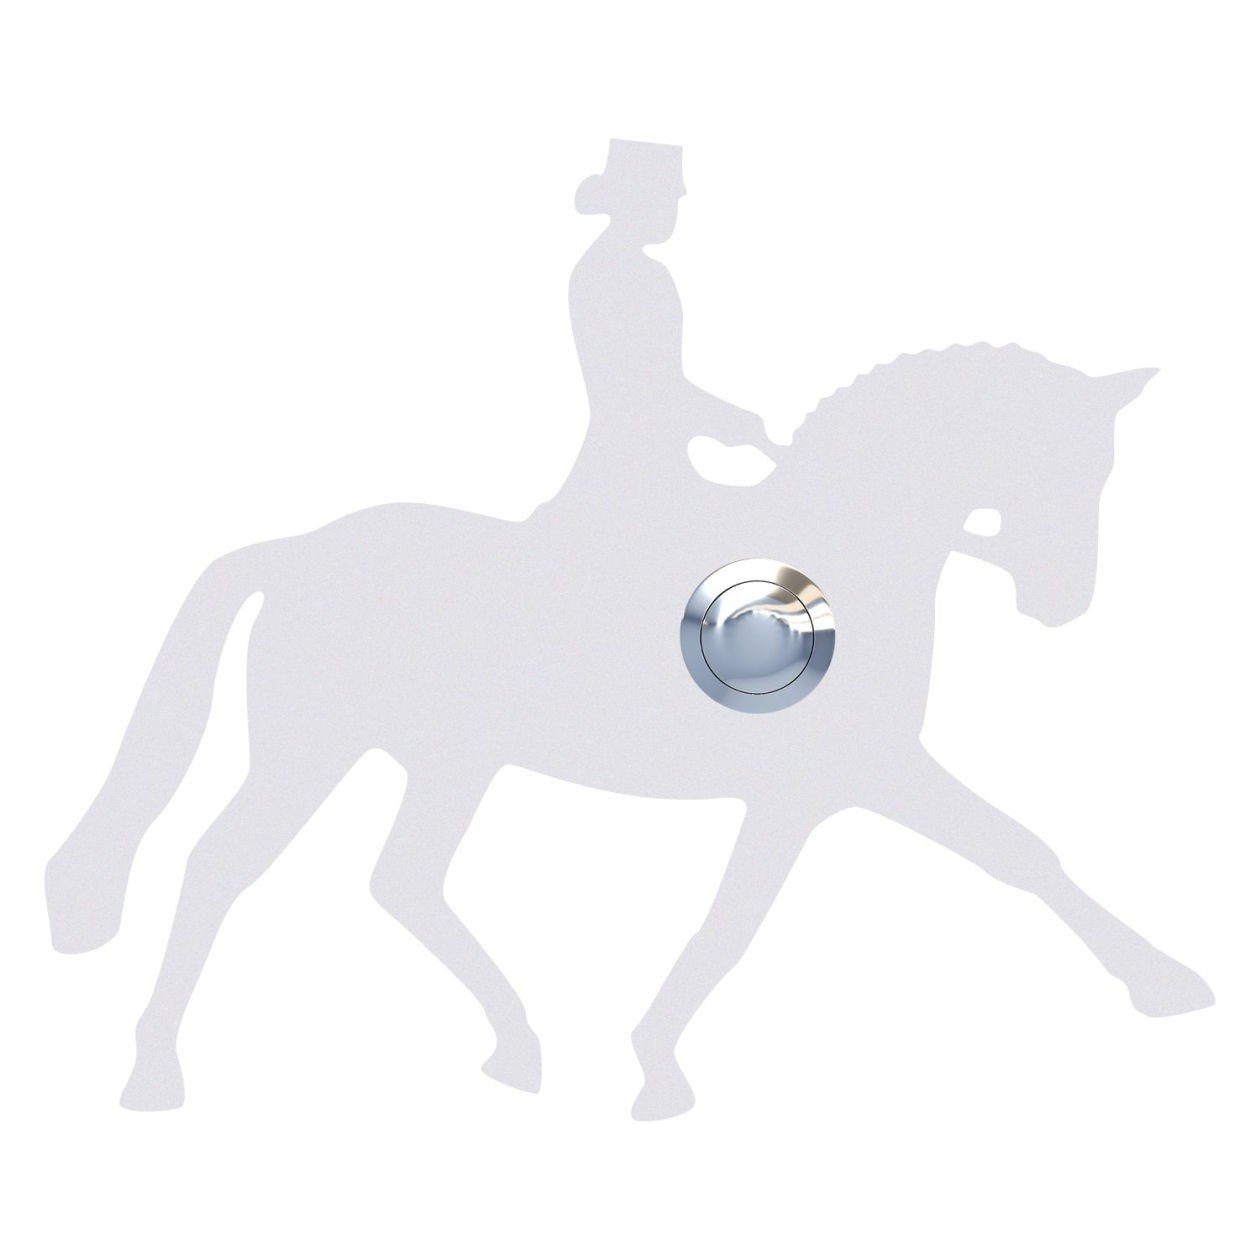 Bravios Briefkasten Klingeltaster Dressurpferd Weiß